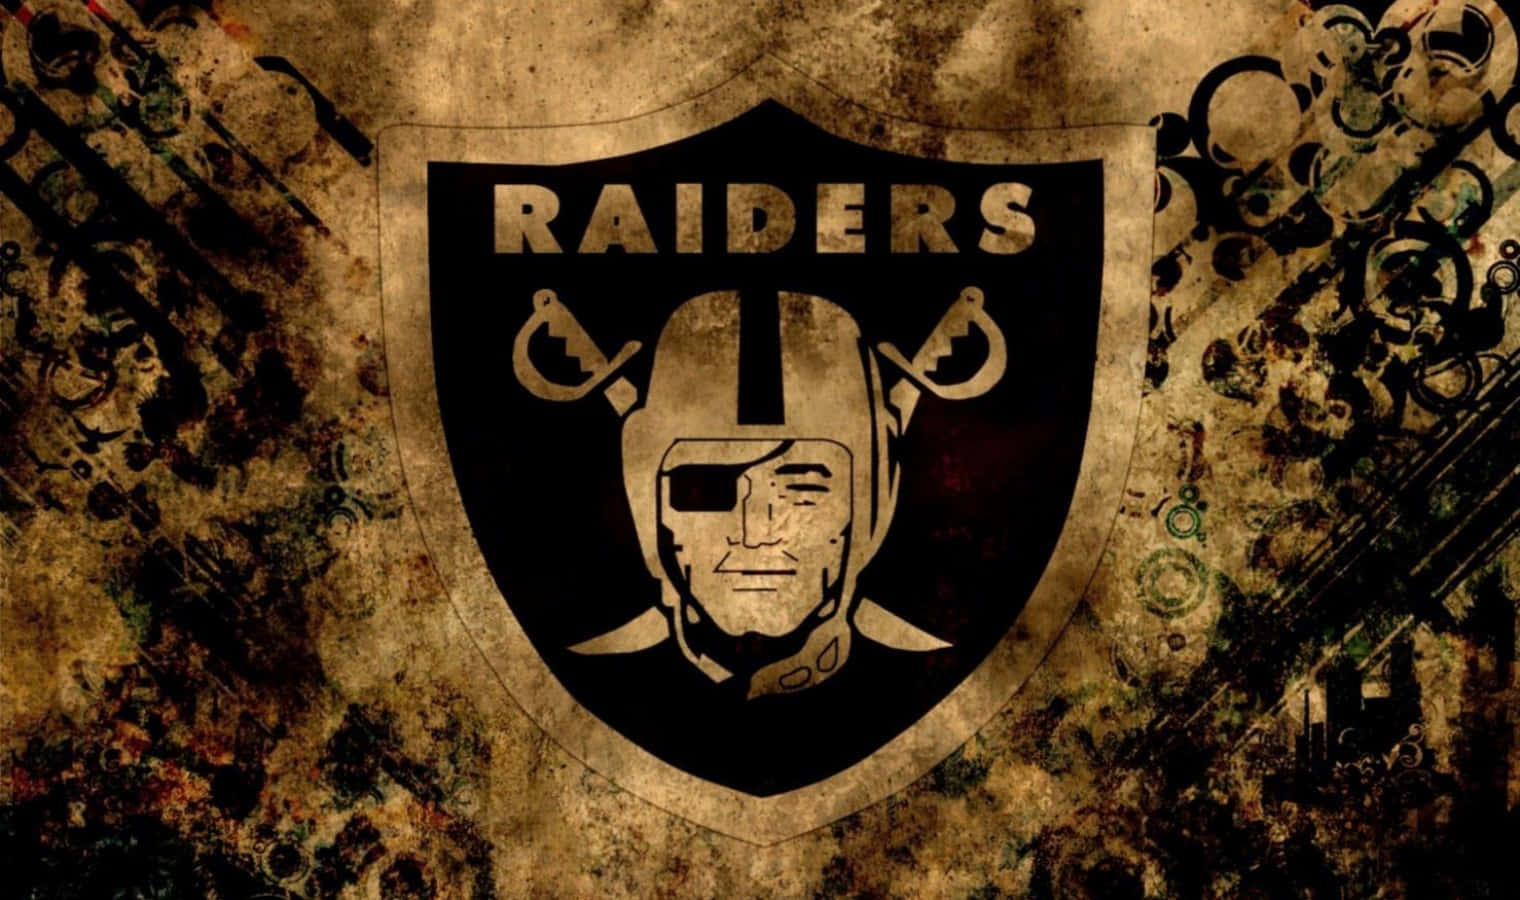 Raiders-logoet 1520 X 900 Wallpaper